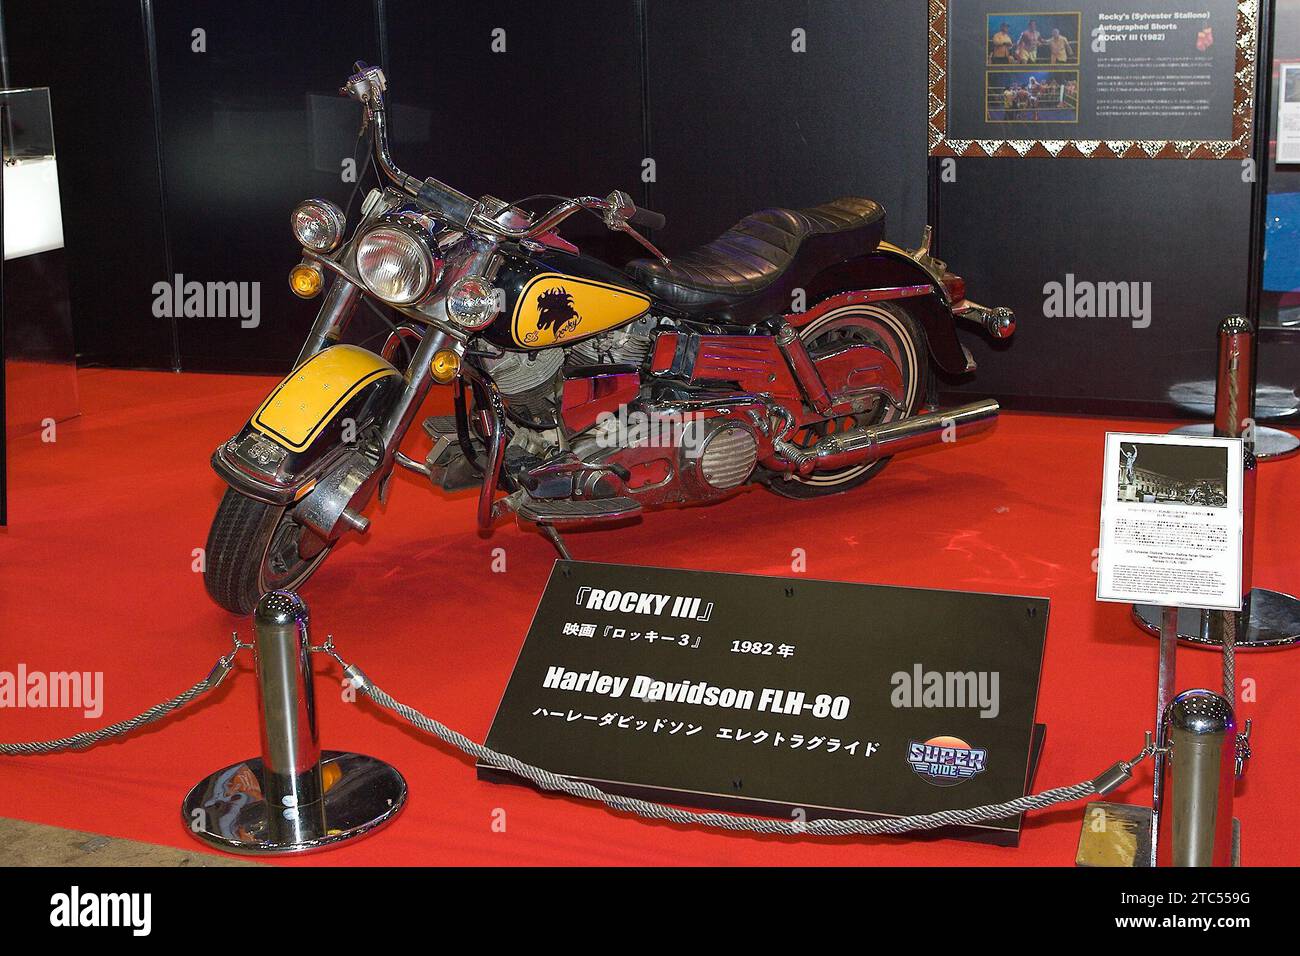 Décembre 8 2023, Tokyo, Japon : Rocky III, Harley Davidson FLH-80 au Tokyo Comic con 2023. La Comic con se tient du 8 au 10 décembre à Tokyo Makuhari Messe. (Photo de Michael Steinebach) Banque D'Images